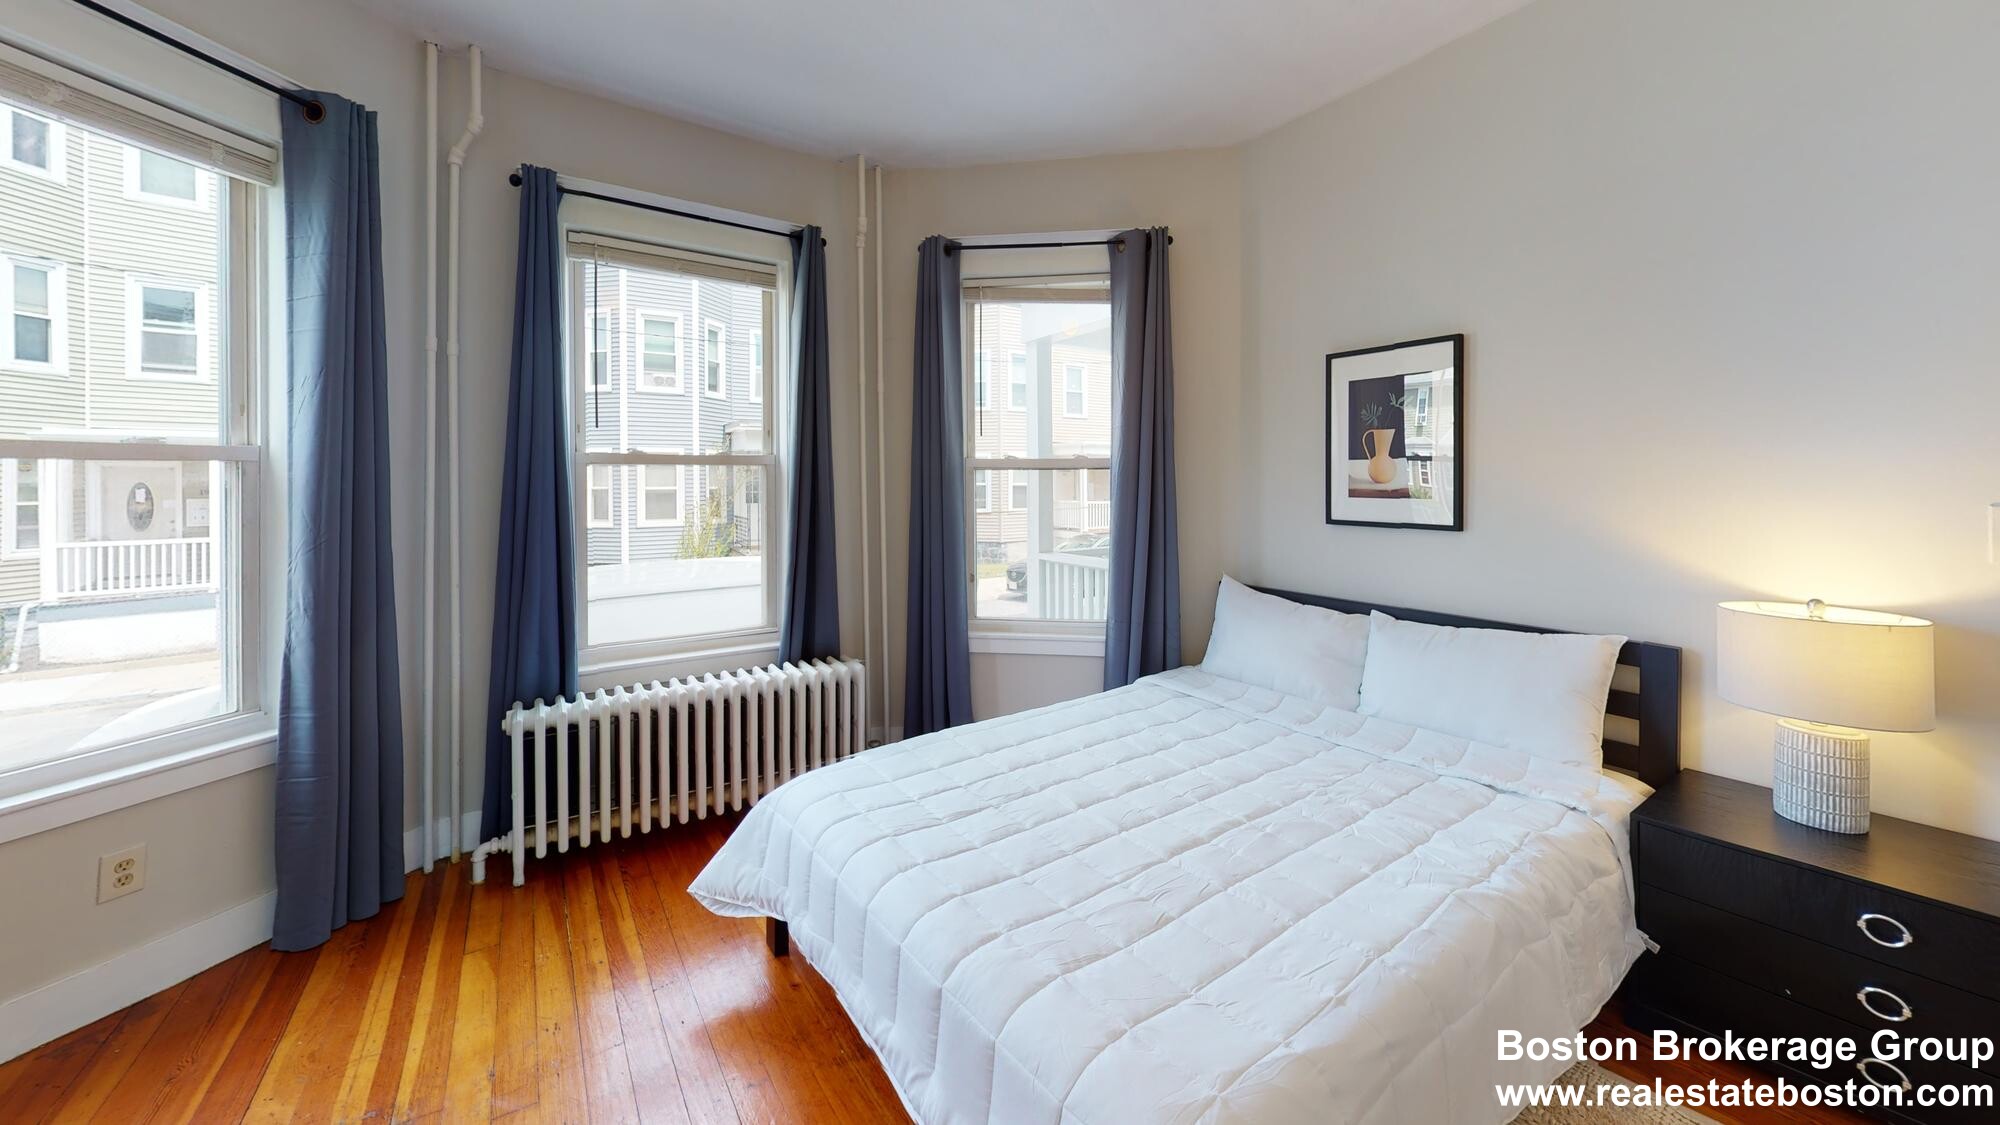 Photos of apartment on Elder,Boston MA 02125